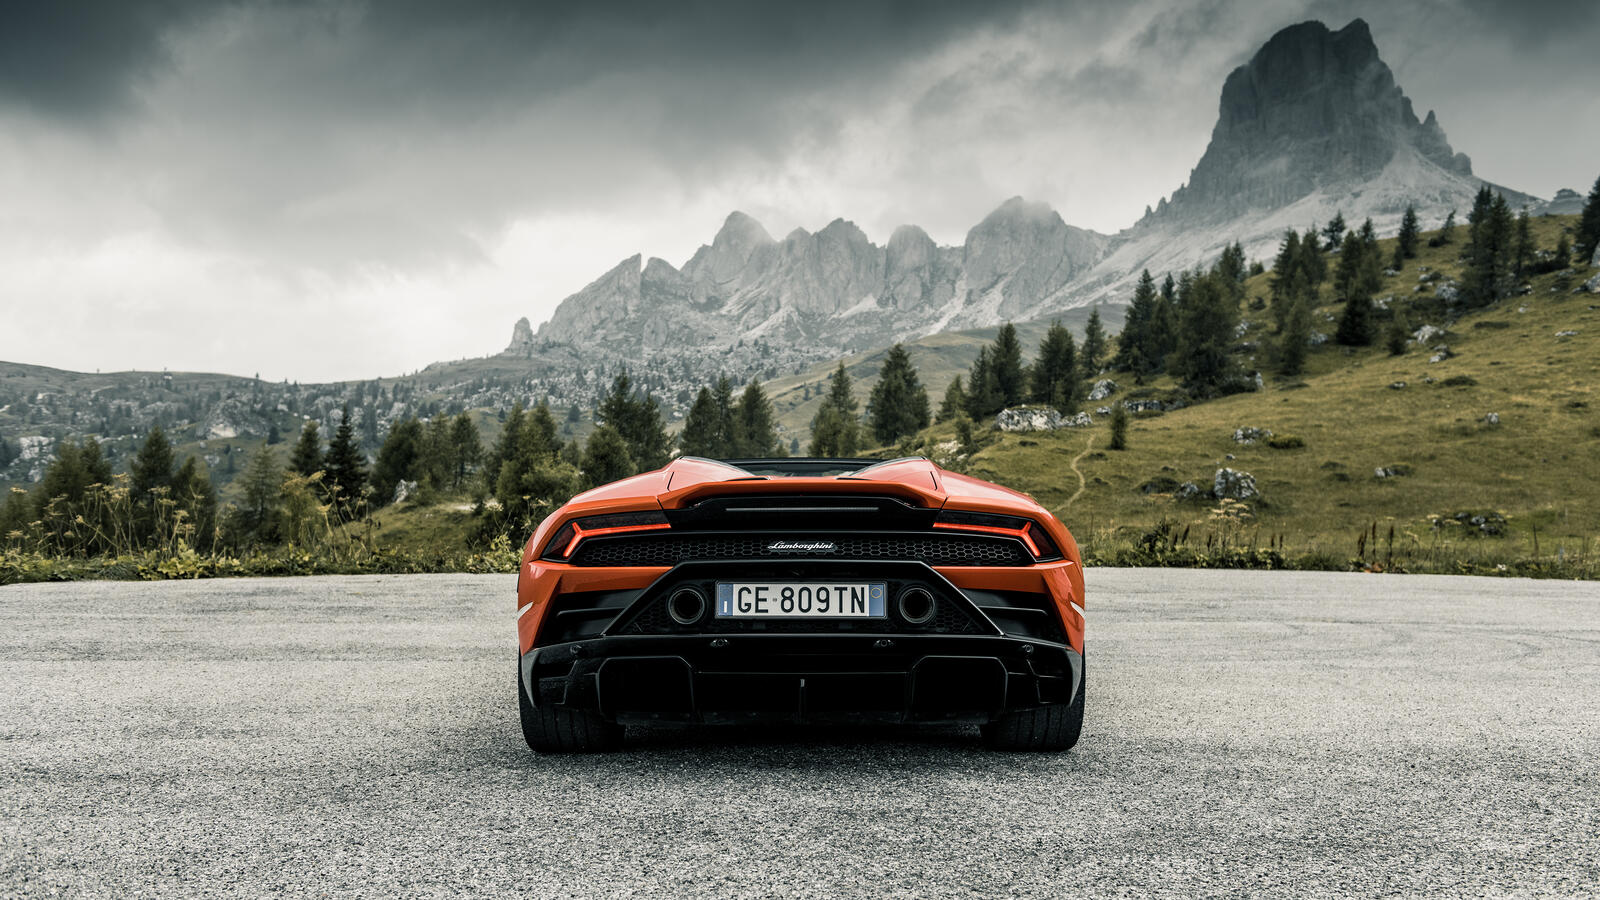 Free photo Lamborghini Huracan Evo in orange rear view